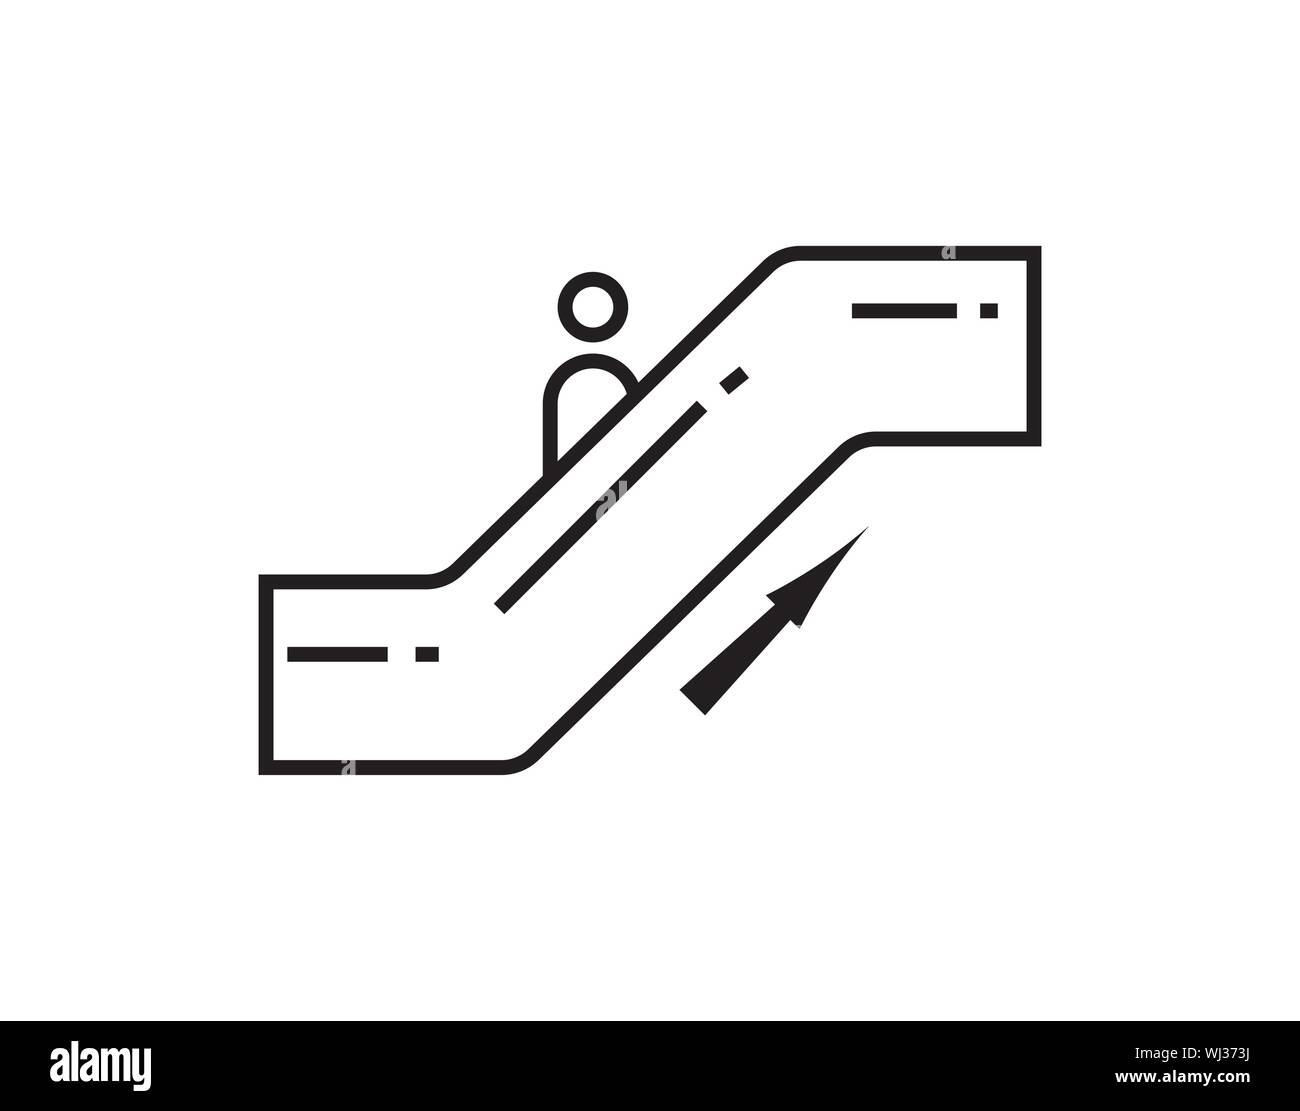 Escalator staircase icon vector image Stock Vector